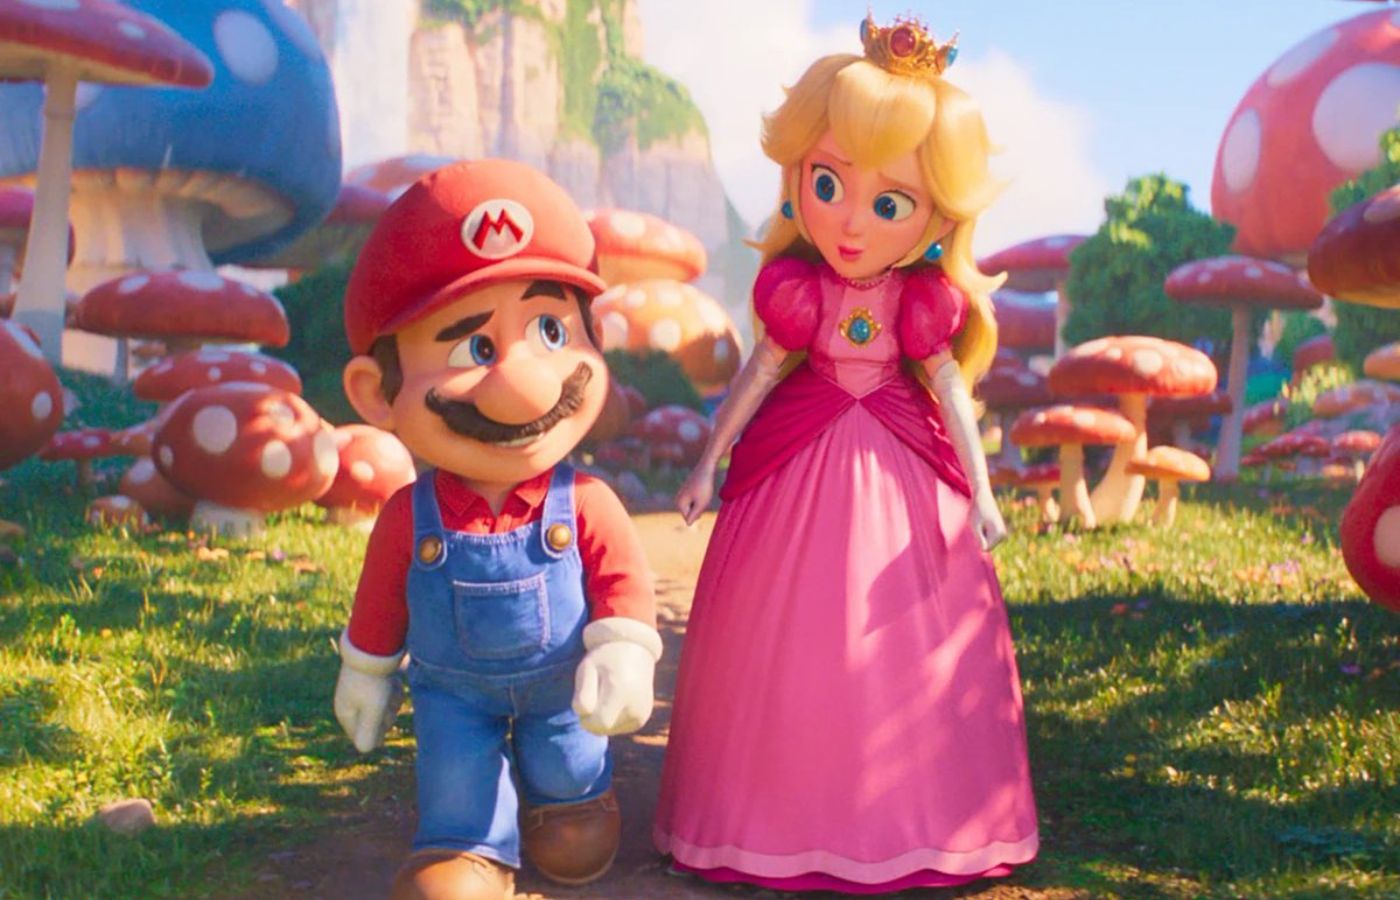 Super Mario Bros. O Filme sobe forte nas bilheterias; veja os números! -  Blog Hiperion